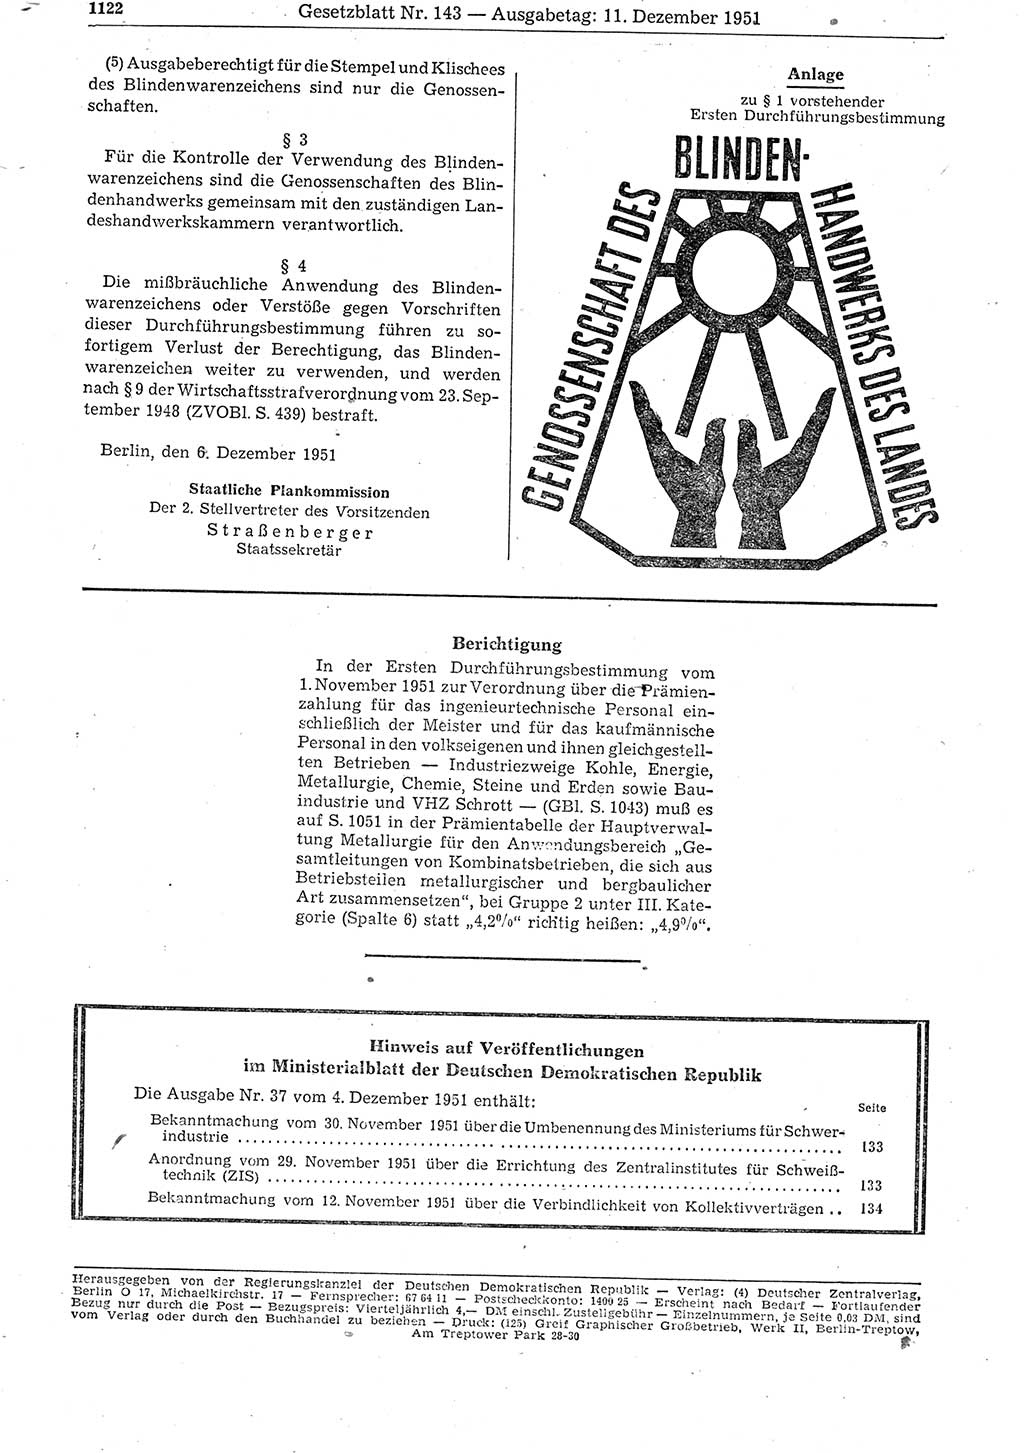 Gesetzblatt (GBl.) der Deutschen Demokratischen Republik (DDR) 1951, Seite 1122 (GBl. DDR 1951, S. 1122)